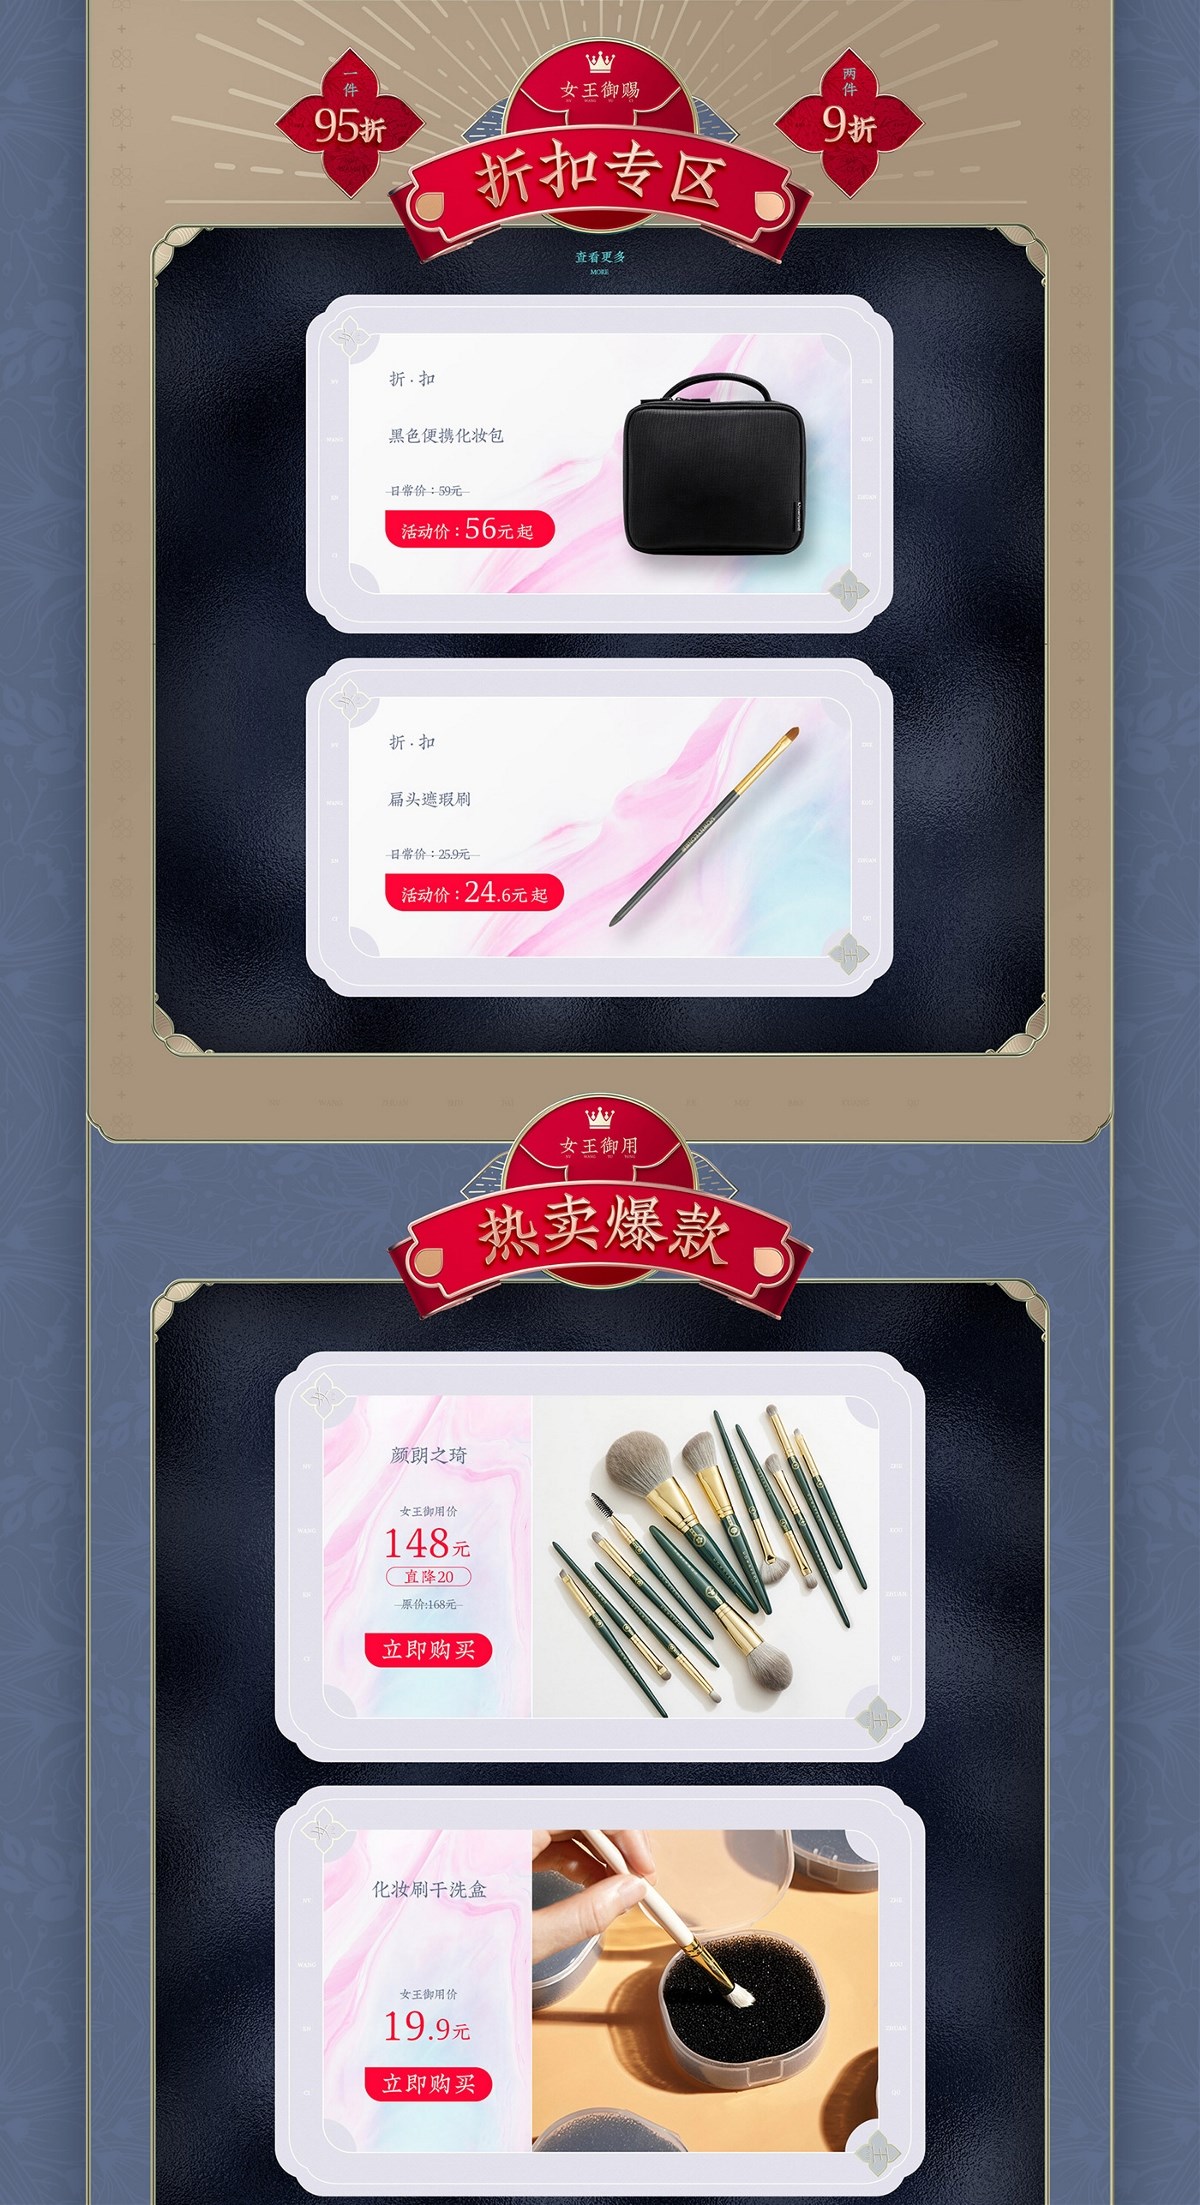 【38女王节】妇女节活动页面移动端设计 美妆工具刷子